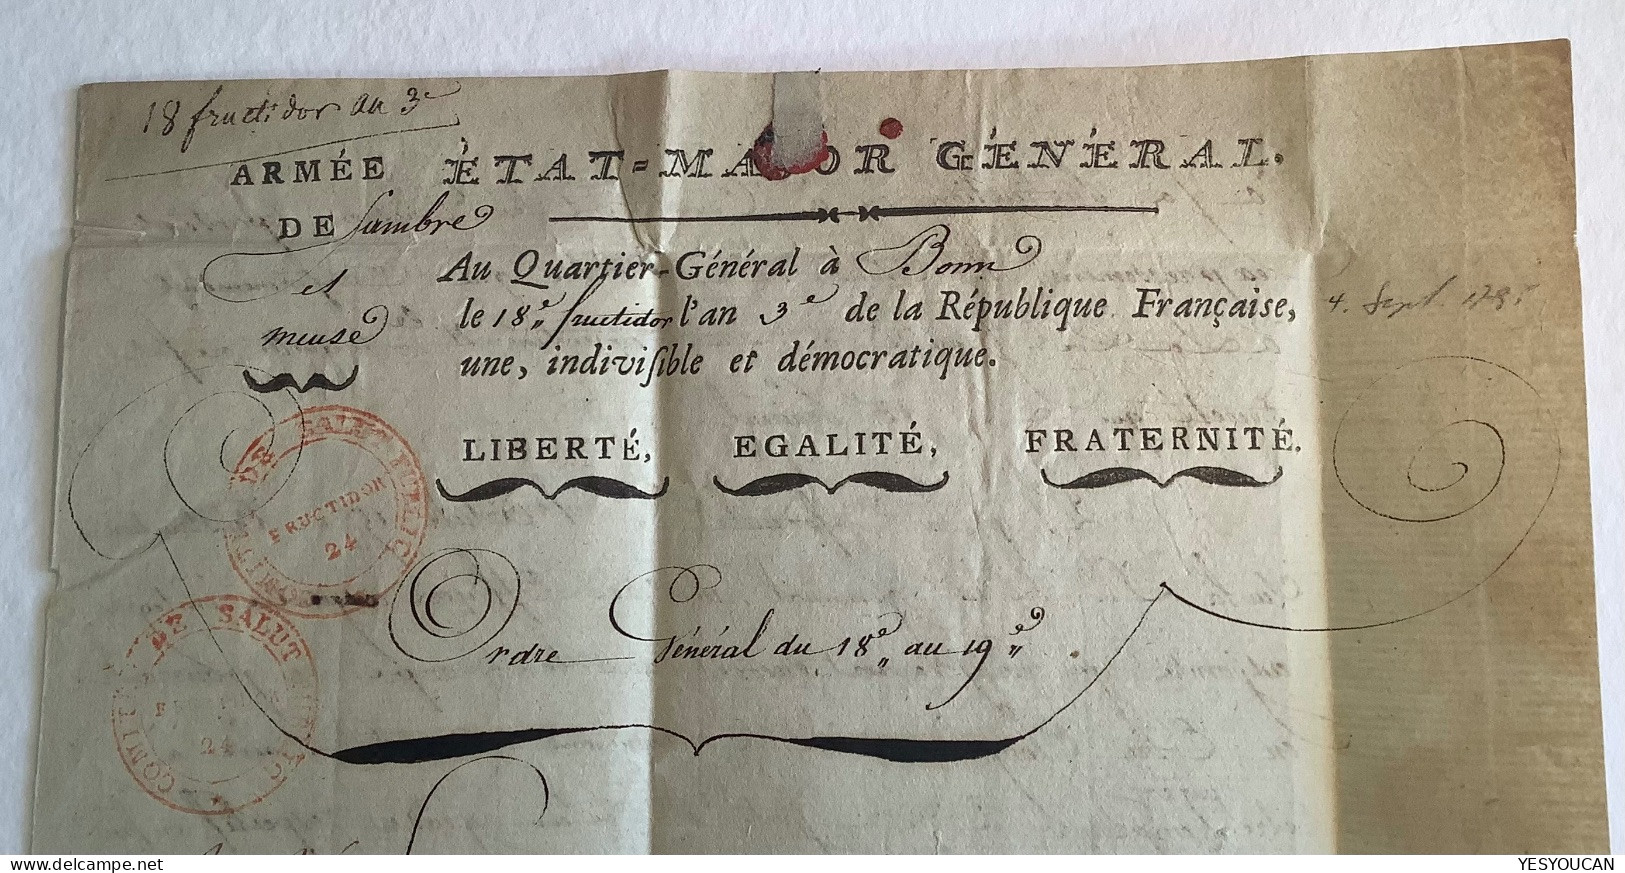 ARMÉE SAMBRE ET MEUSE+ CHARGÉ RR ! Bonn 1795 lettre  (France marque Preussen Feldpost militaire army field post cover